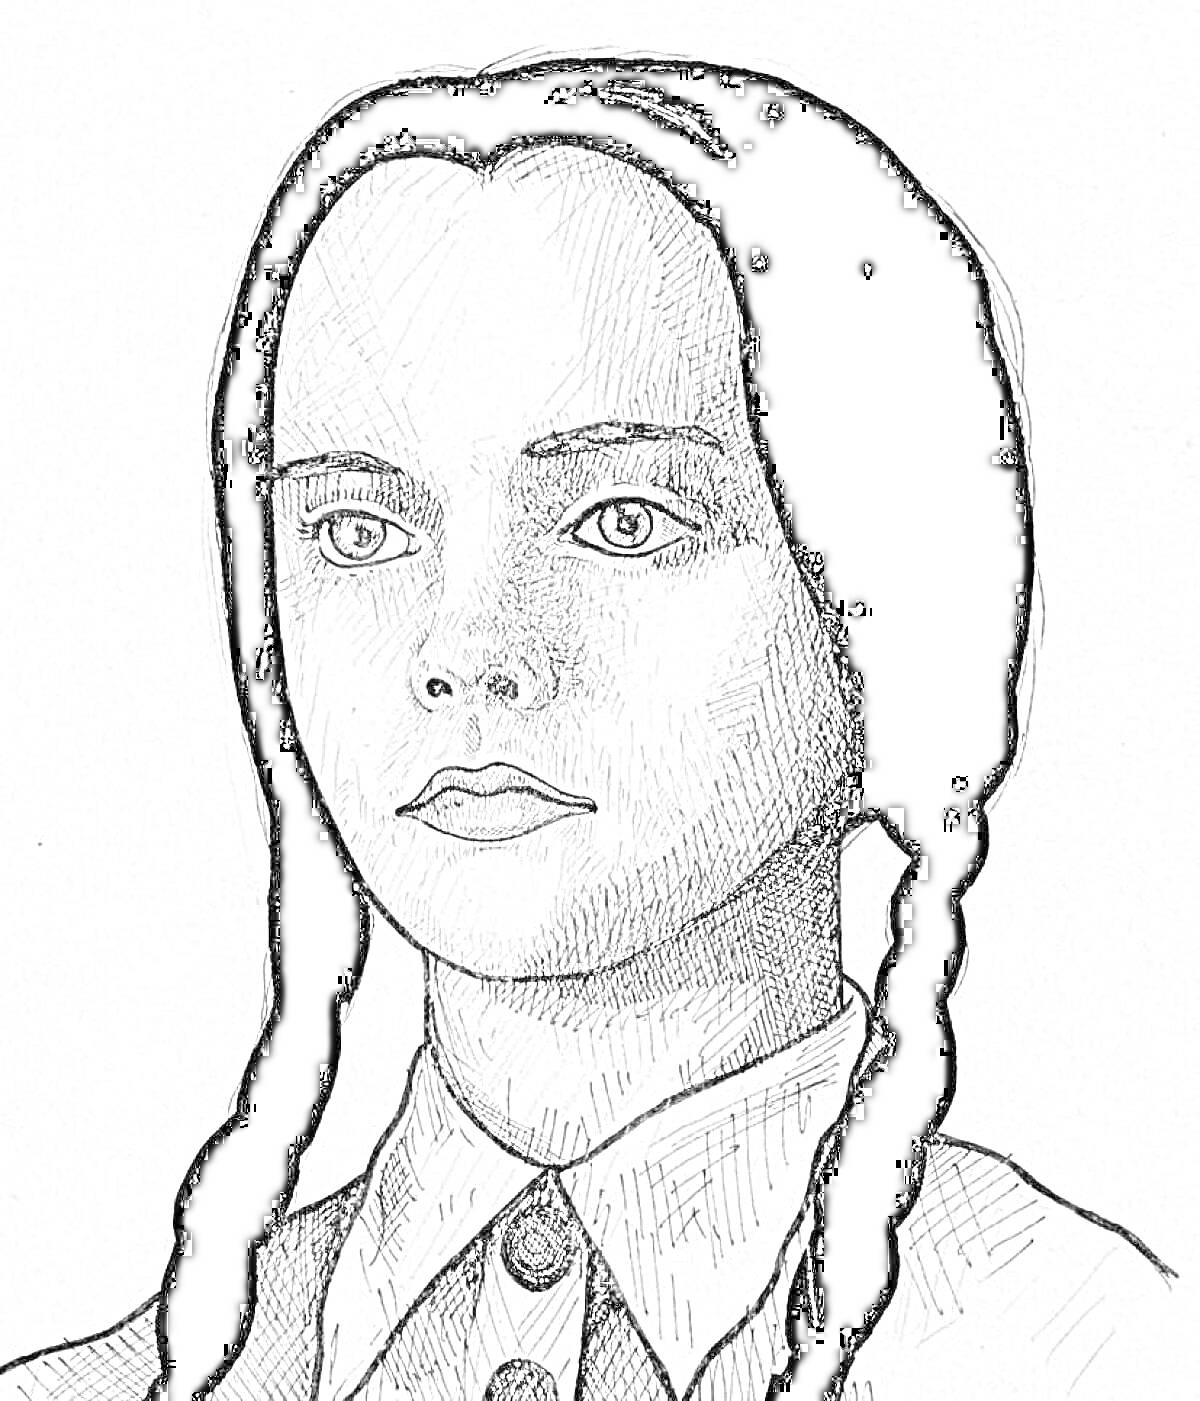 Портрет девочки в черно-белых тонах с двумя косичками, в пуговичной рубашке